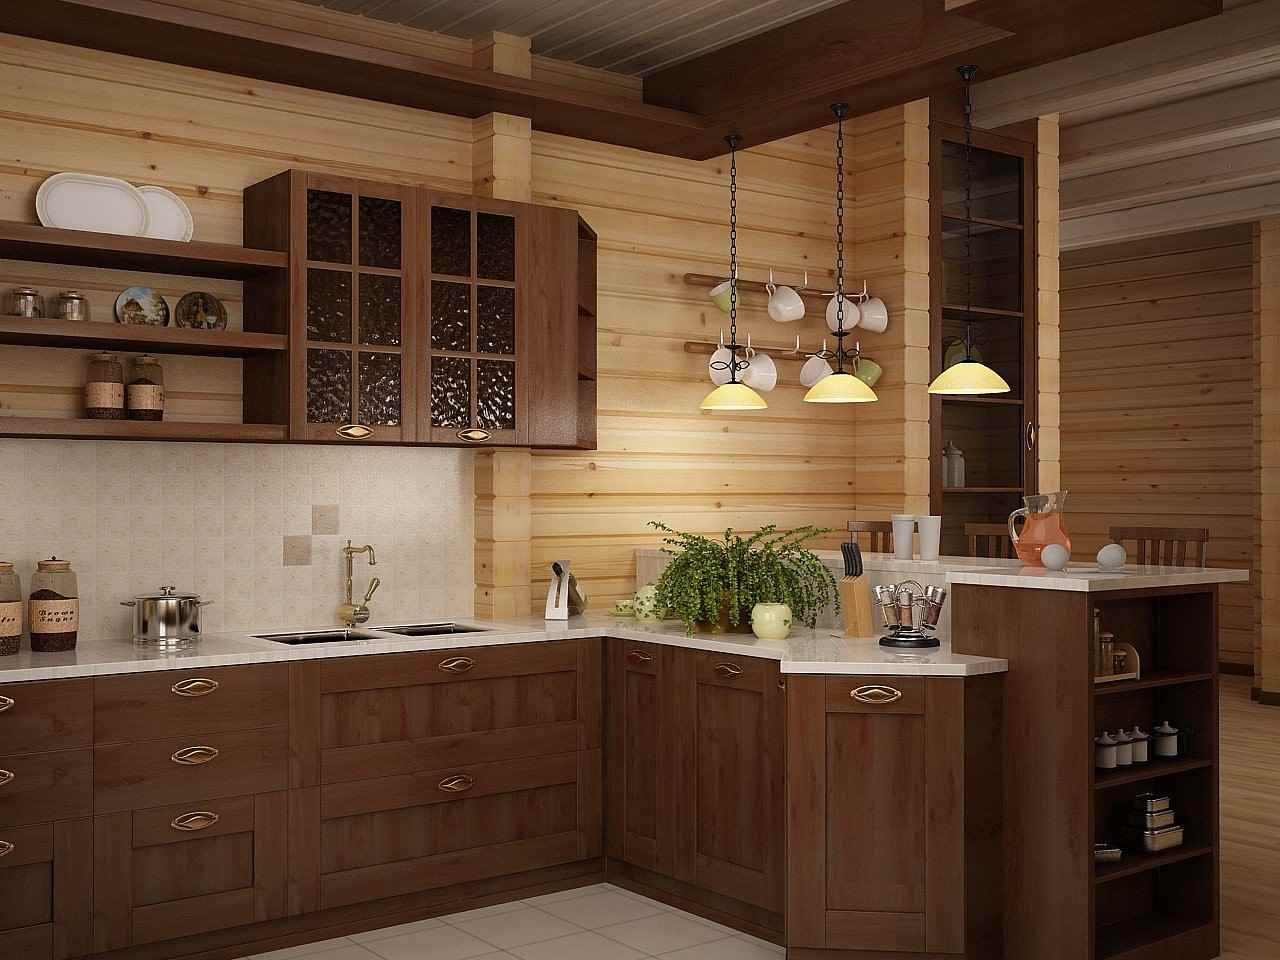 l'idée d'un beau décor de cuisine dans une maison en bois